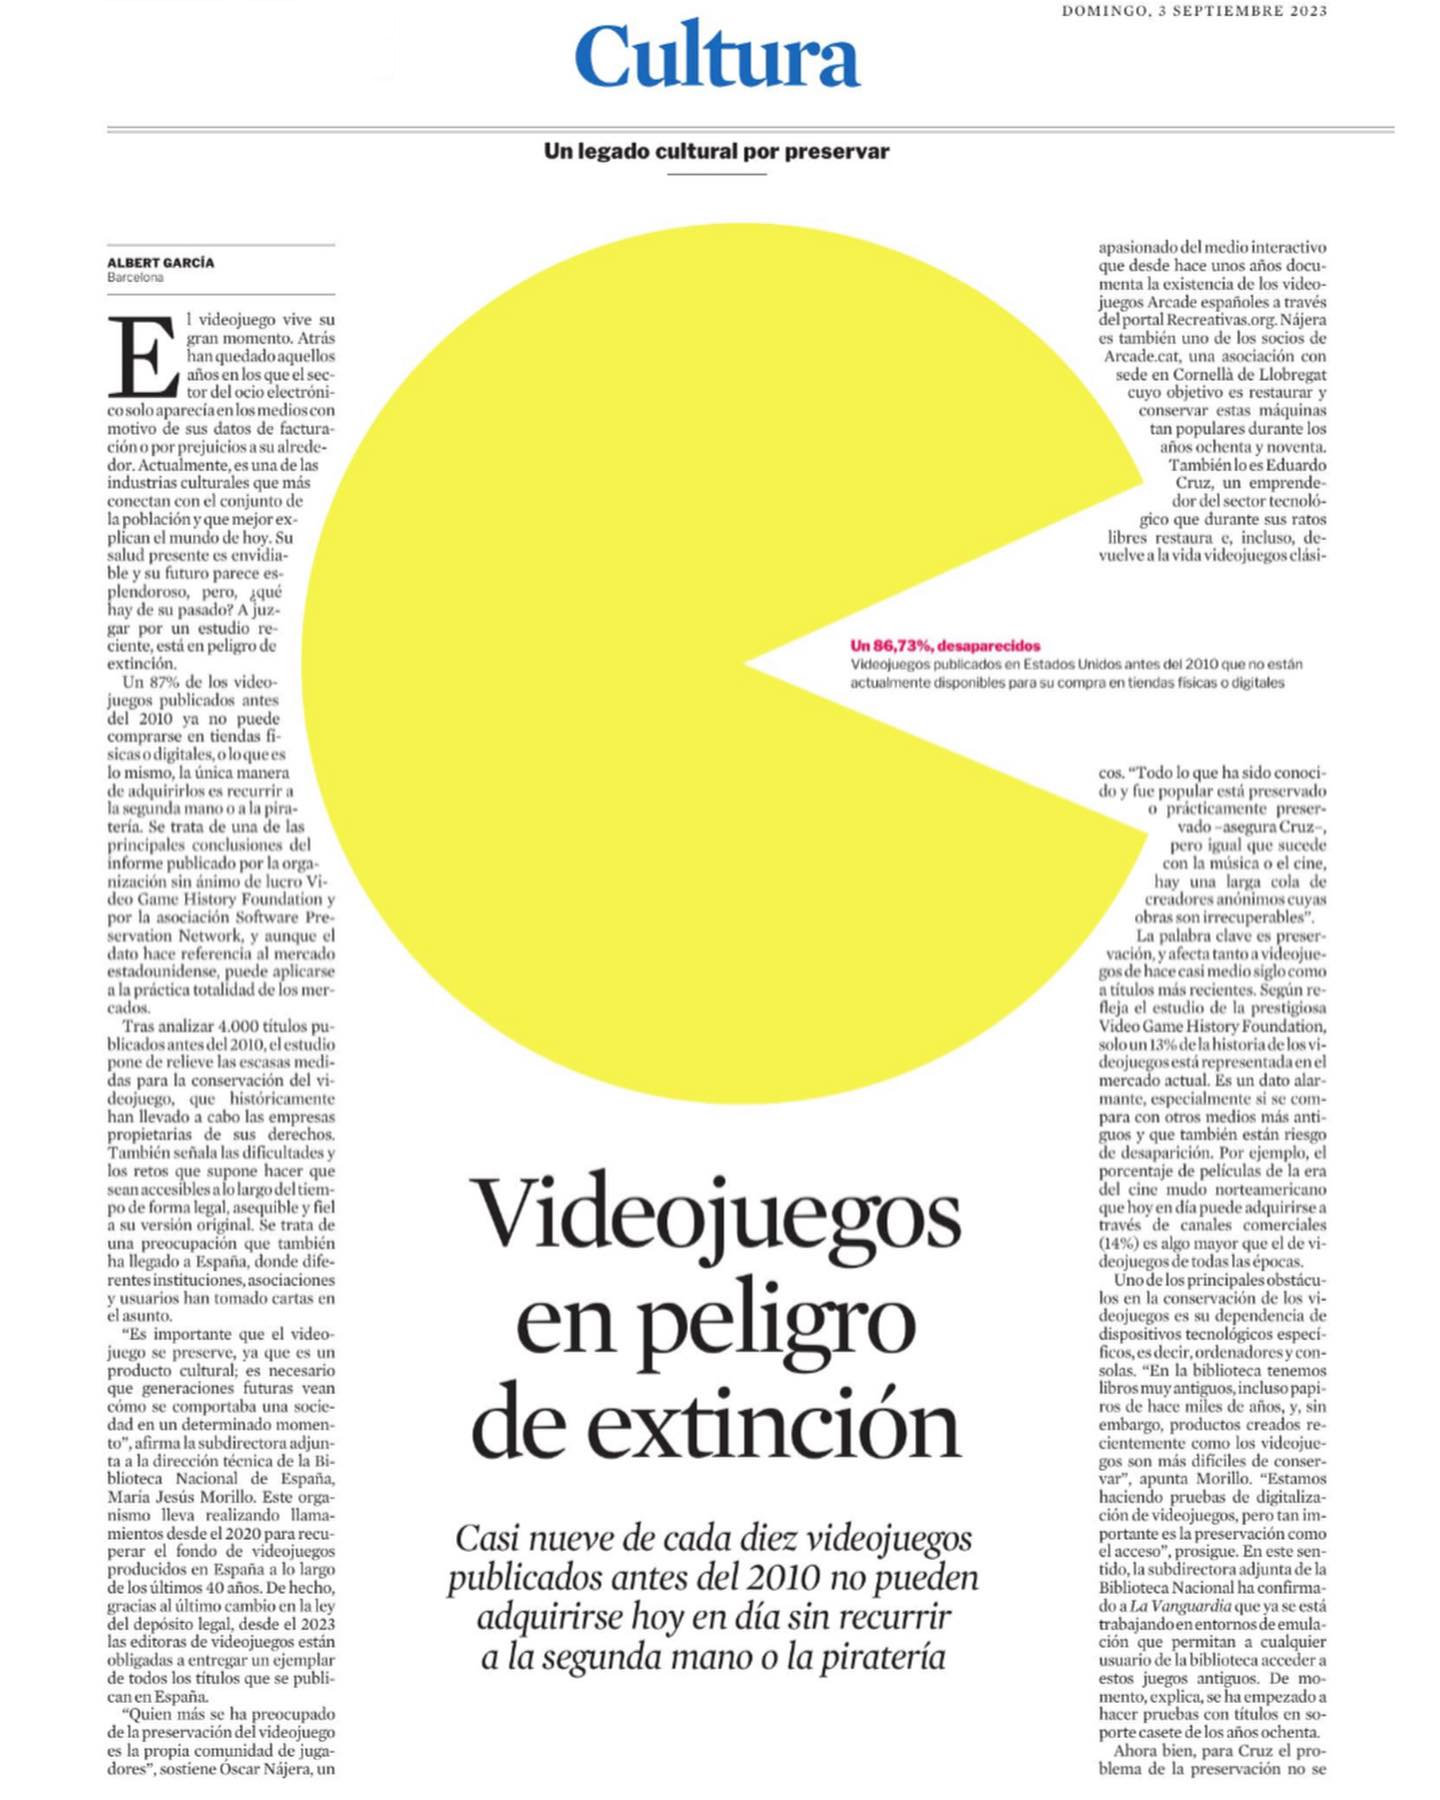 Muestra del articulo publicado en la edición en papel de La Vanguardia el pasado domingo 3 de septiembre.